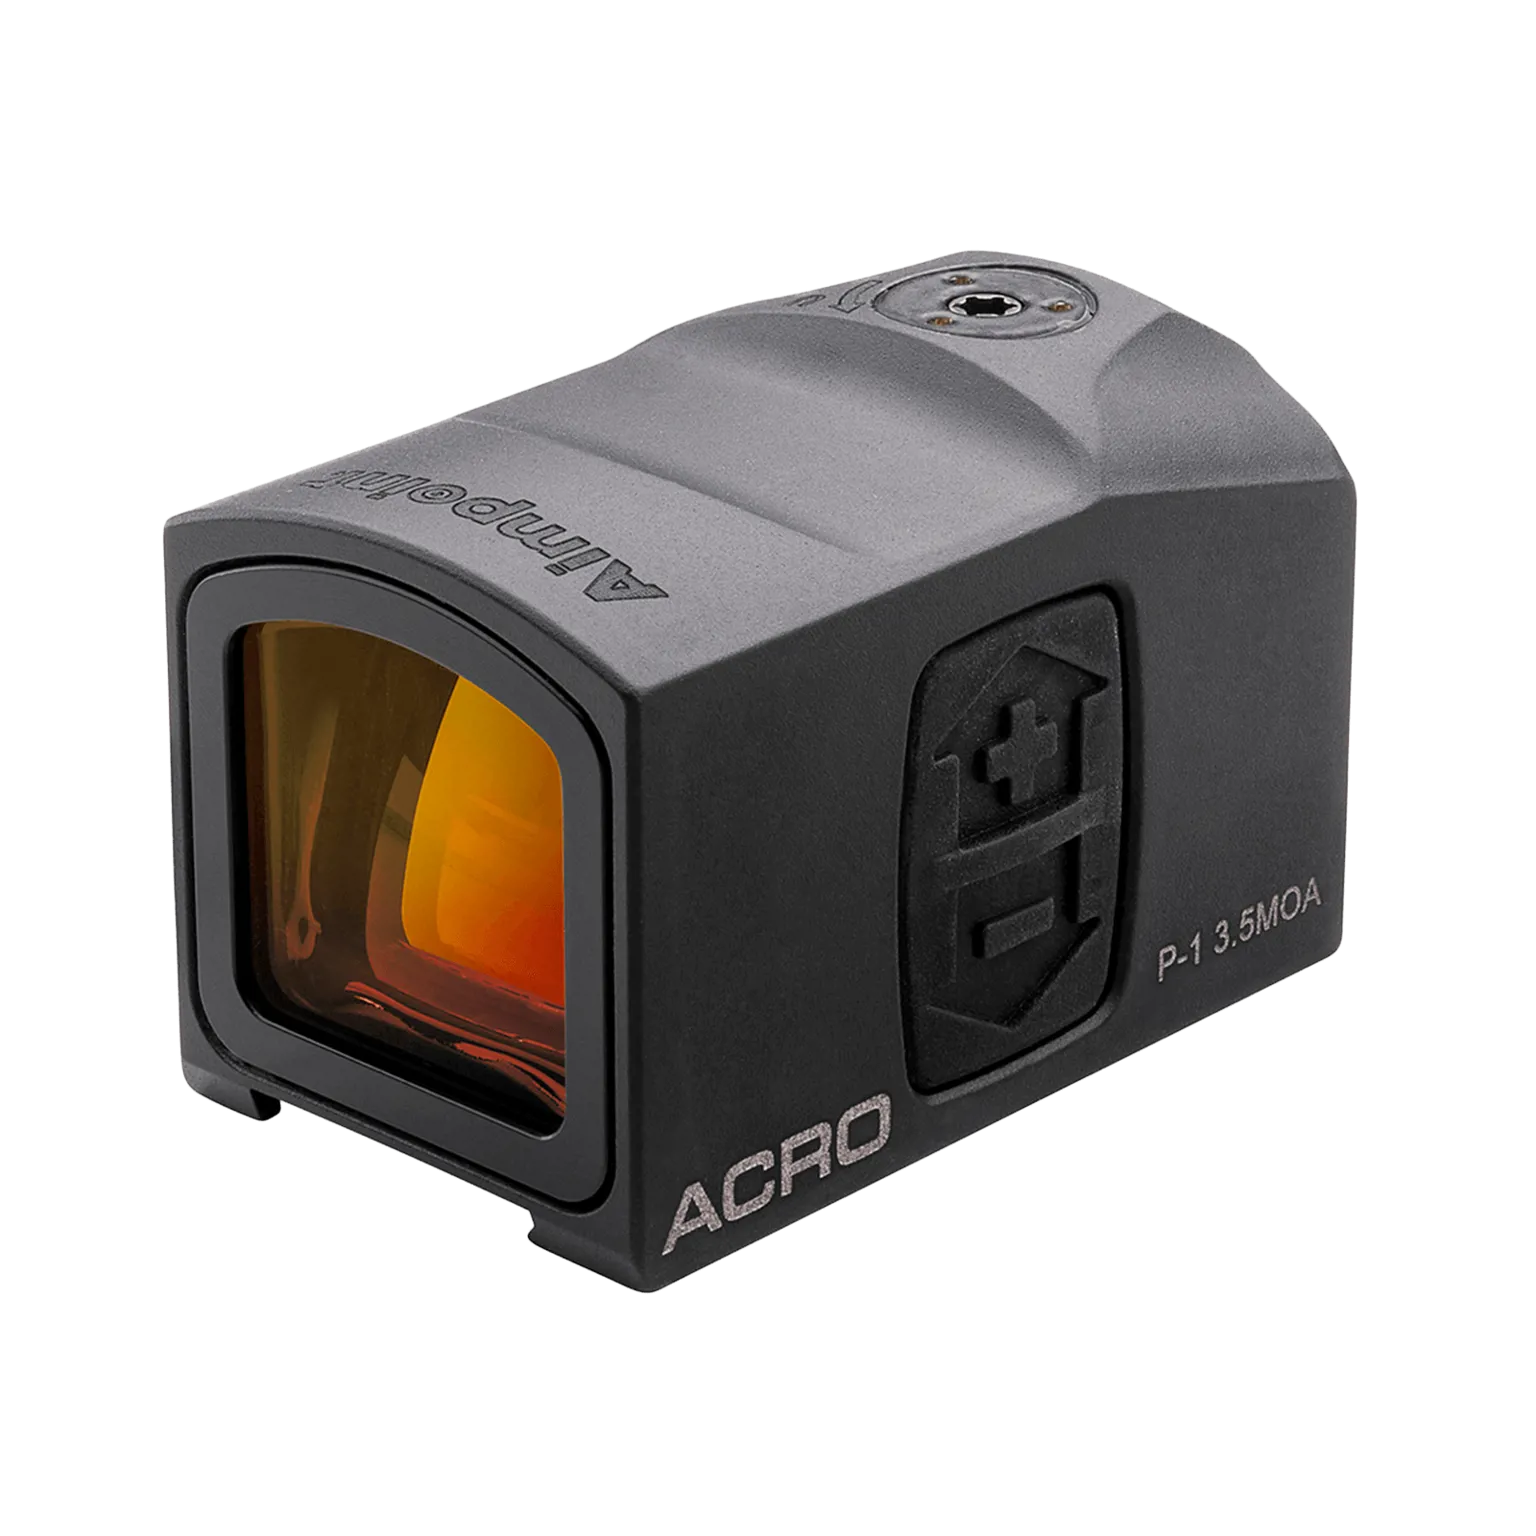 Acro P-1™ 3.5 MOA - Viseur point rouge avec interface Acro™ intégrée - 1